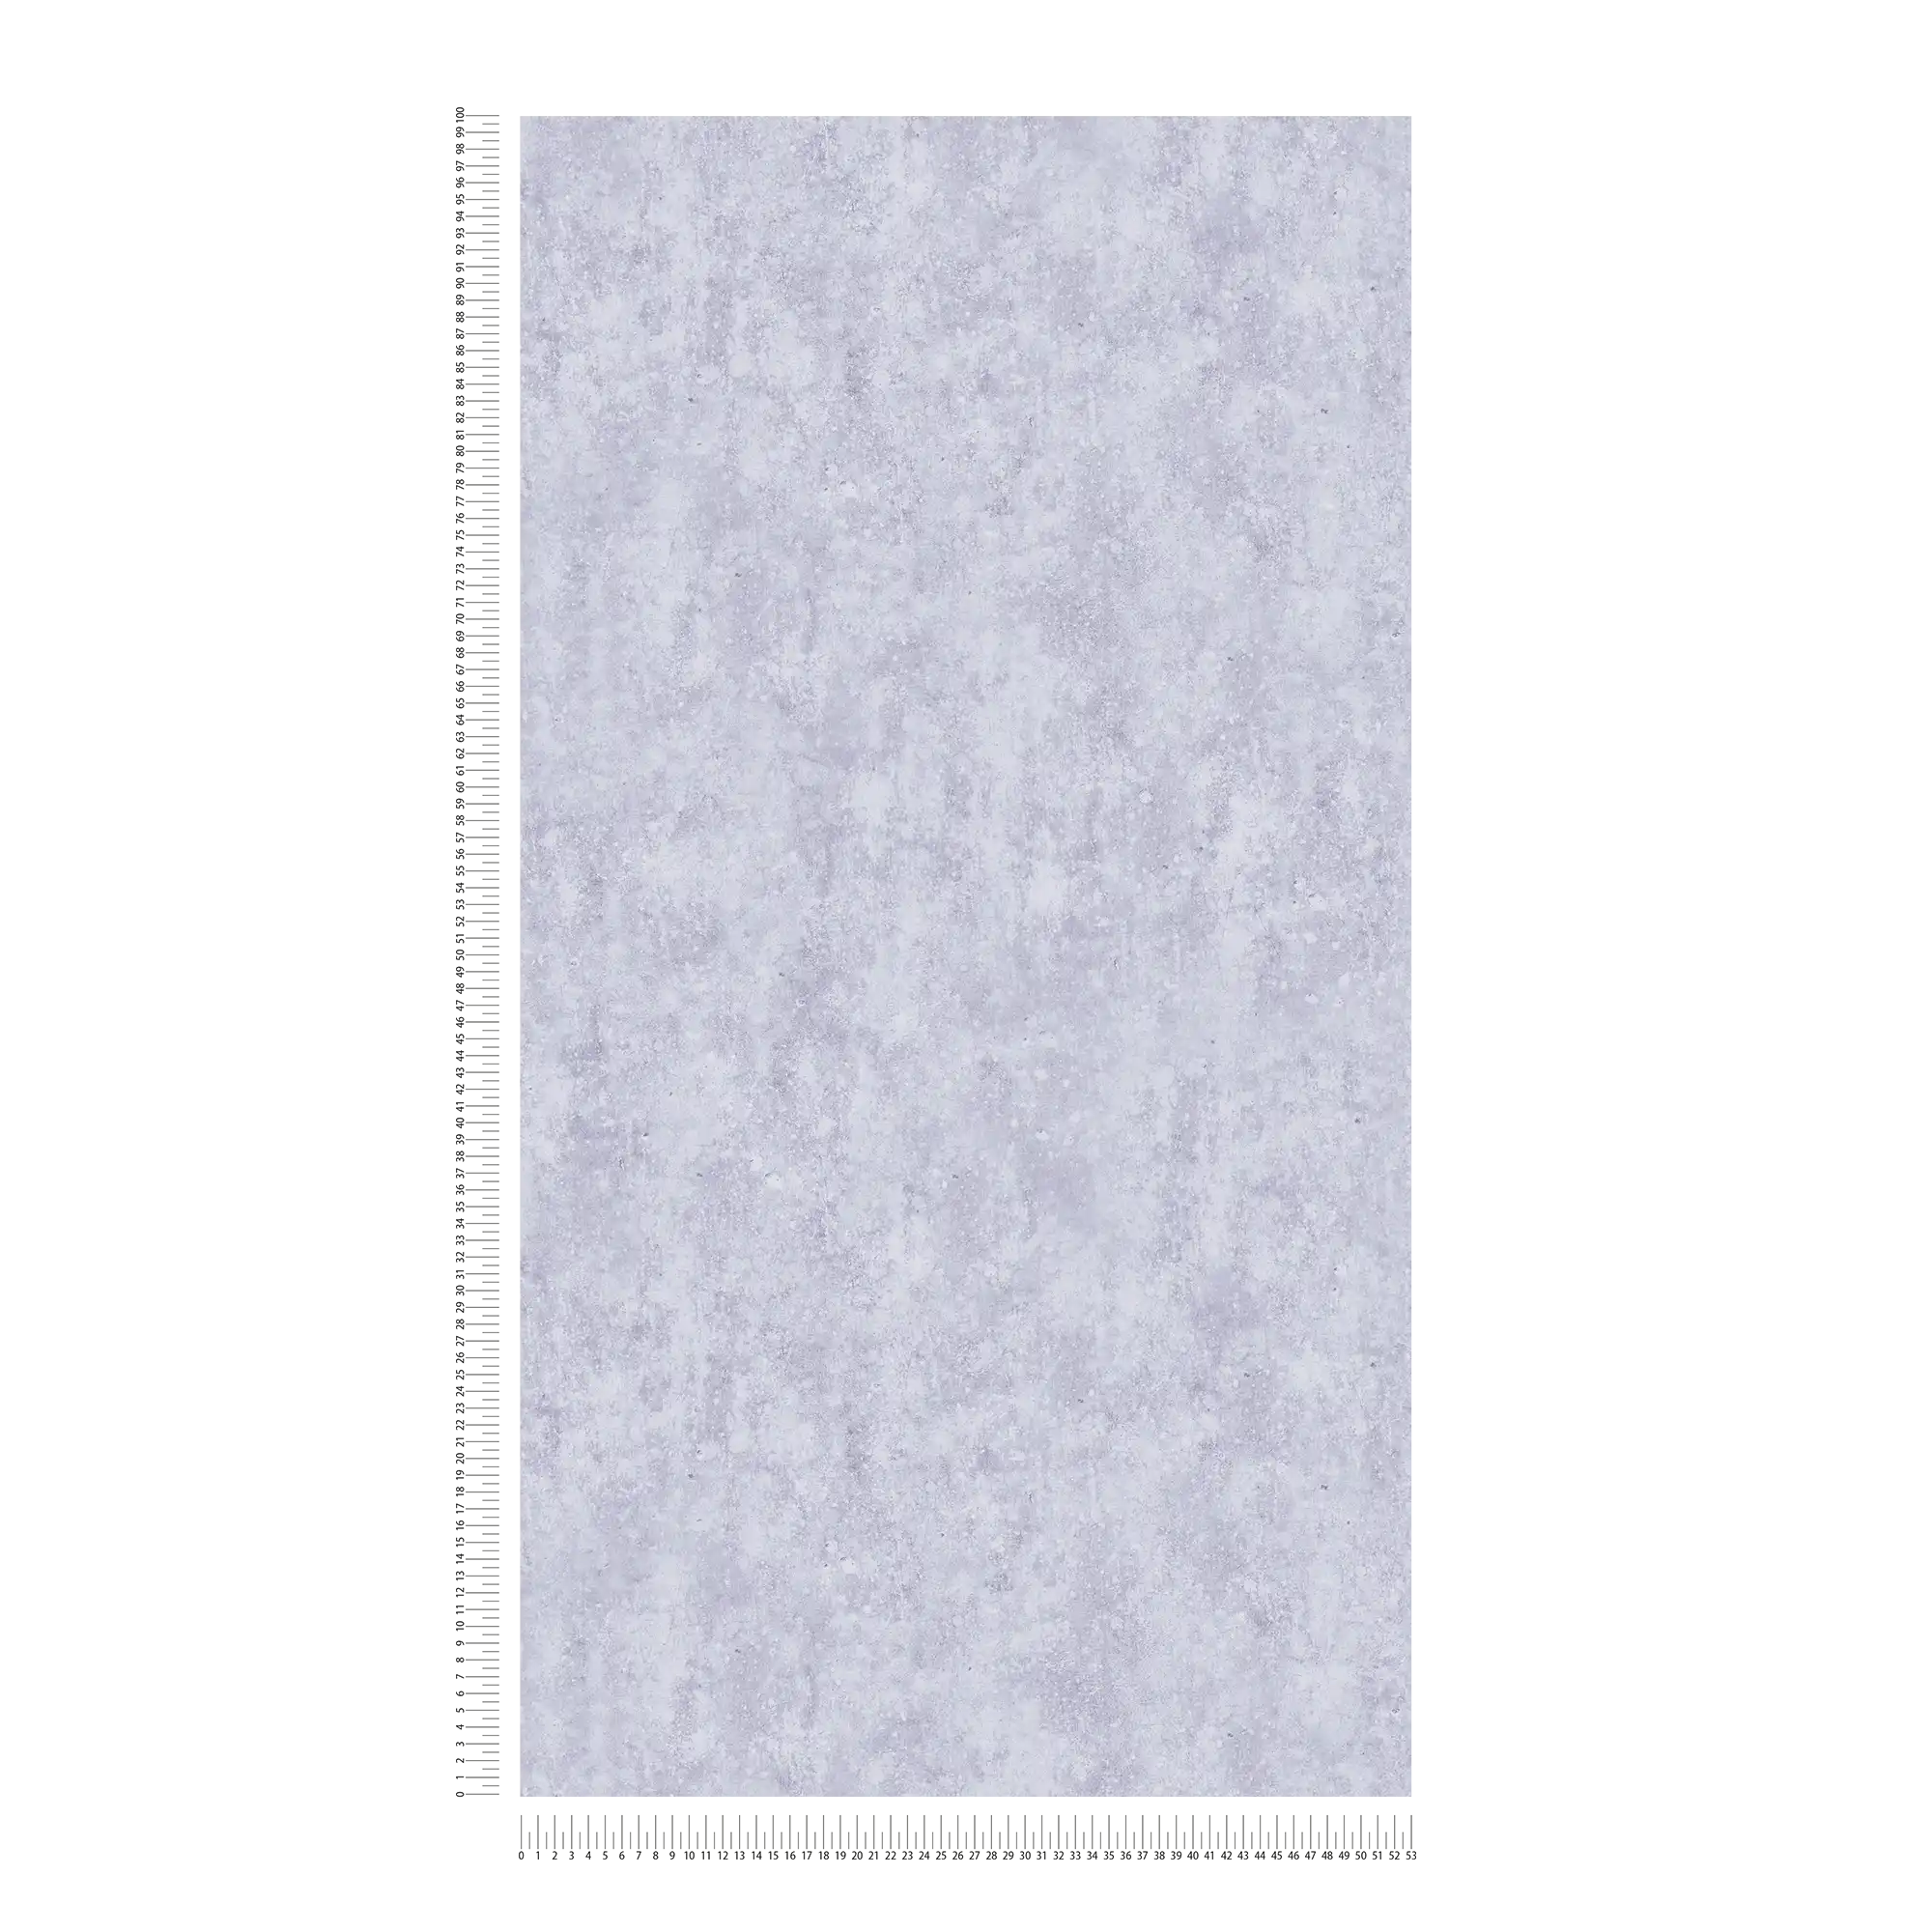             Papier peint imitation béton chambre d'ado - gris, bleu
        